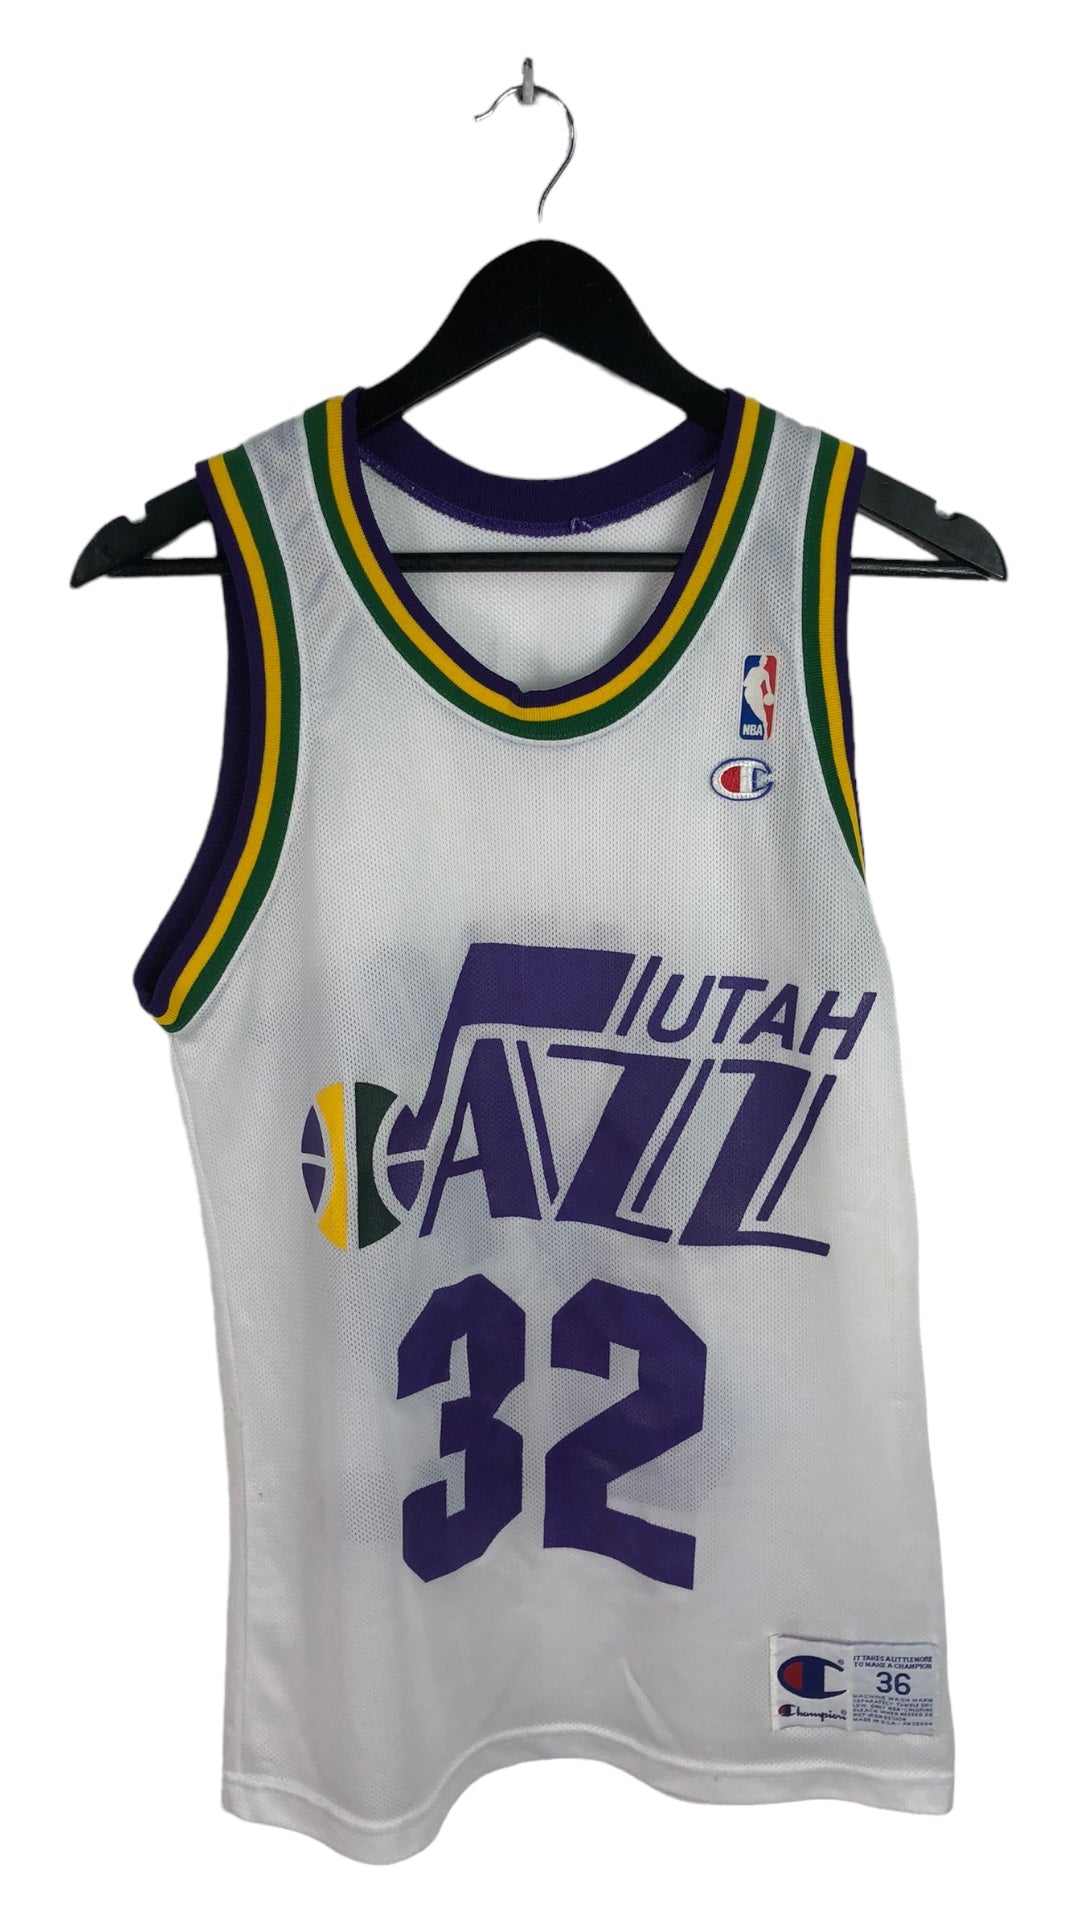 Preowned Utah Jazz Karl Malone White Jersey Sz S